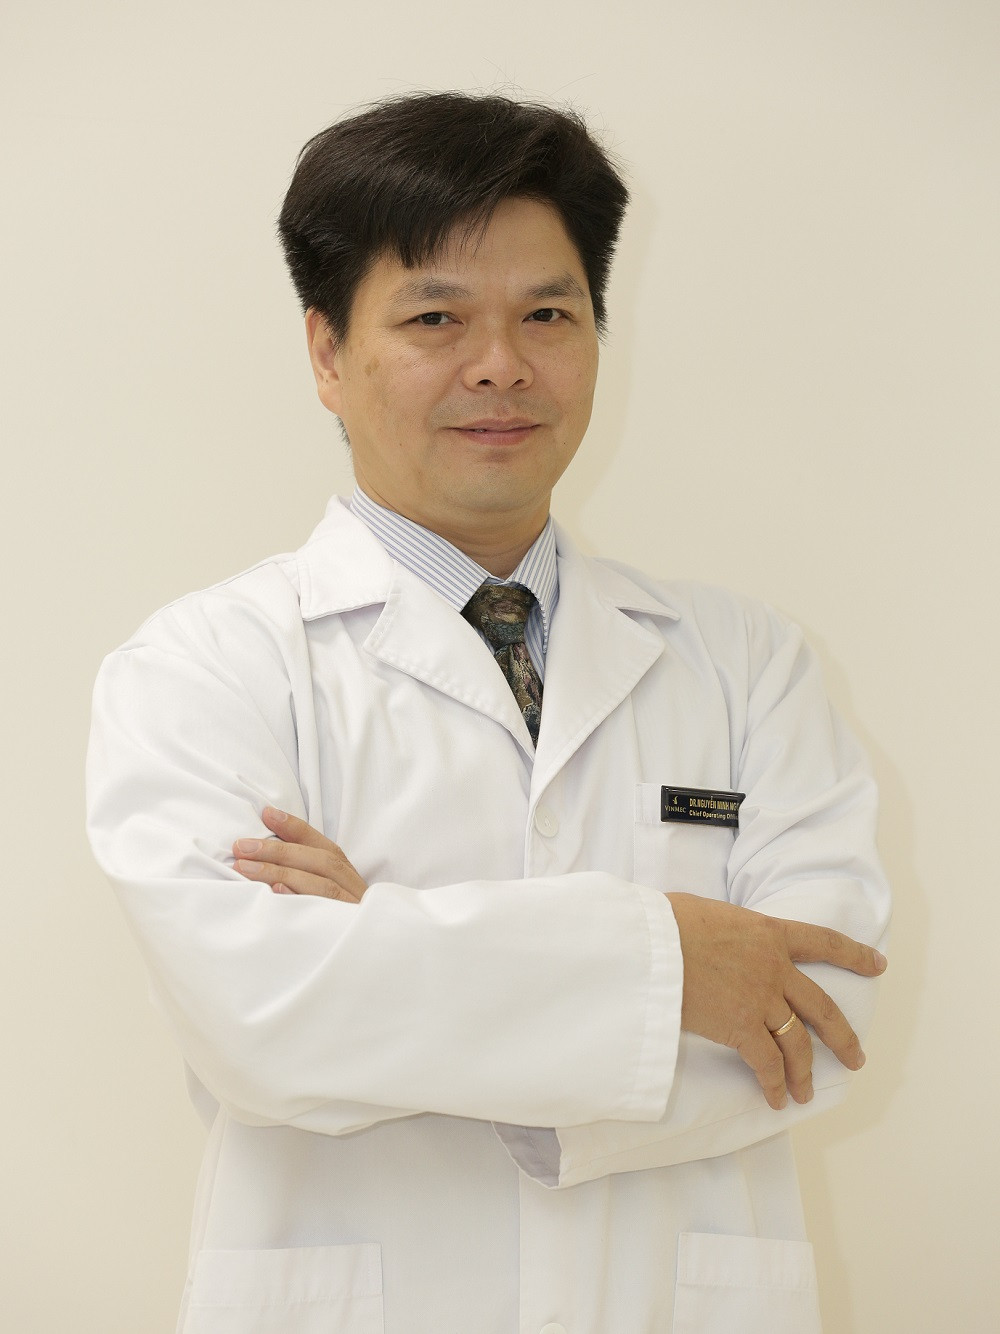 Bác sĩ Nguyễn Minh Ngọc, Quản lý kinh doanh phát triển y tế du lịch, Hệ thống Y tế Vinmec